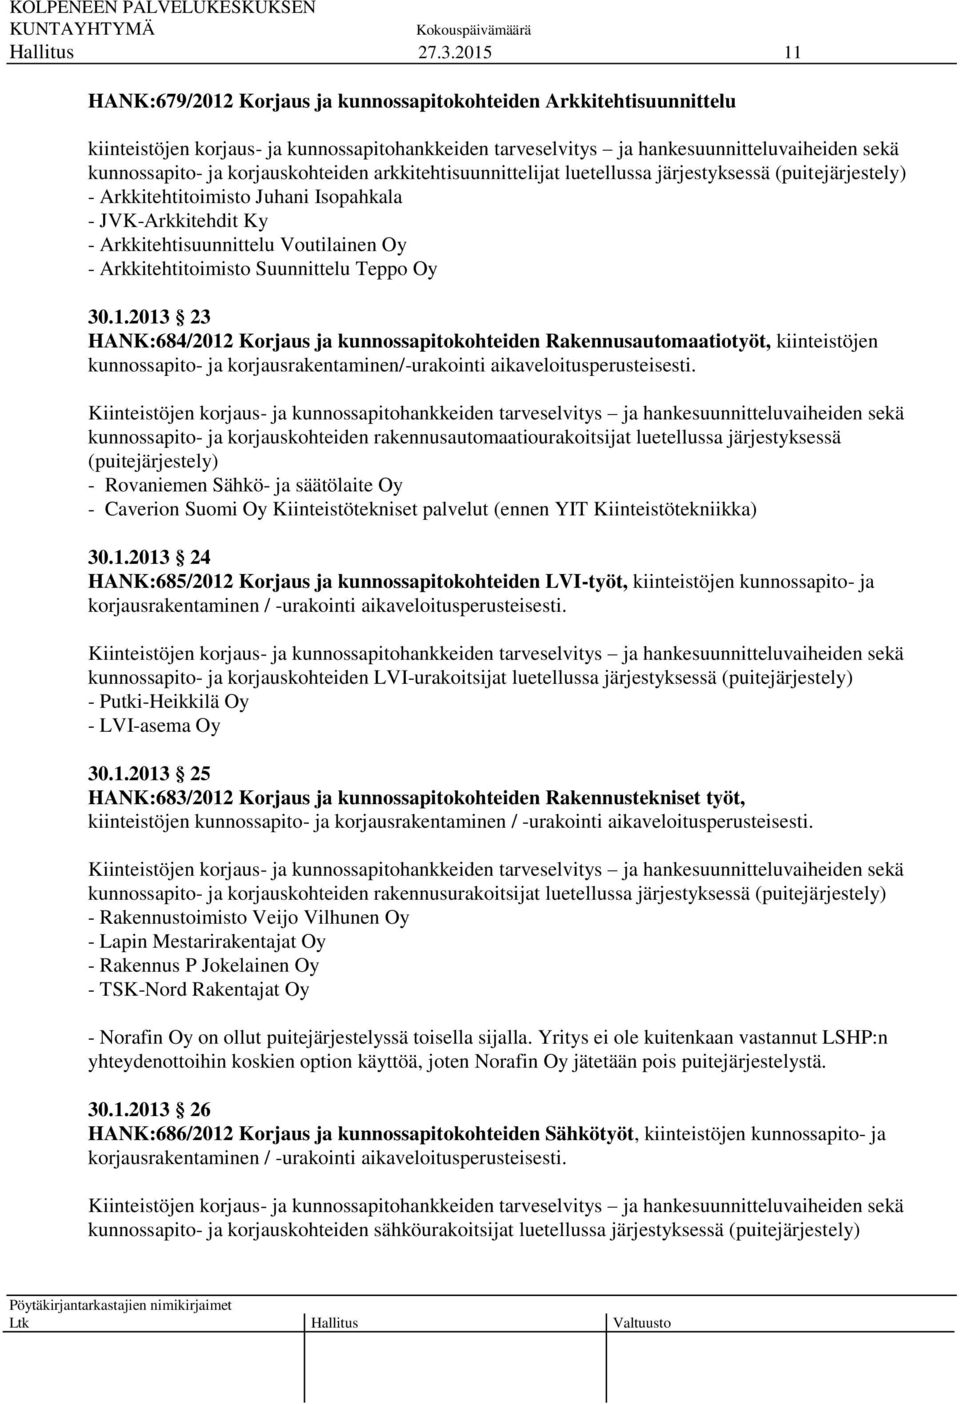 Arkkitehtitoimisto Suunnittelu Teppo Oy 30.1.